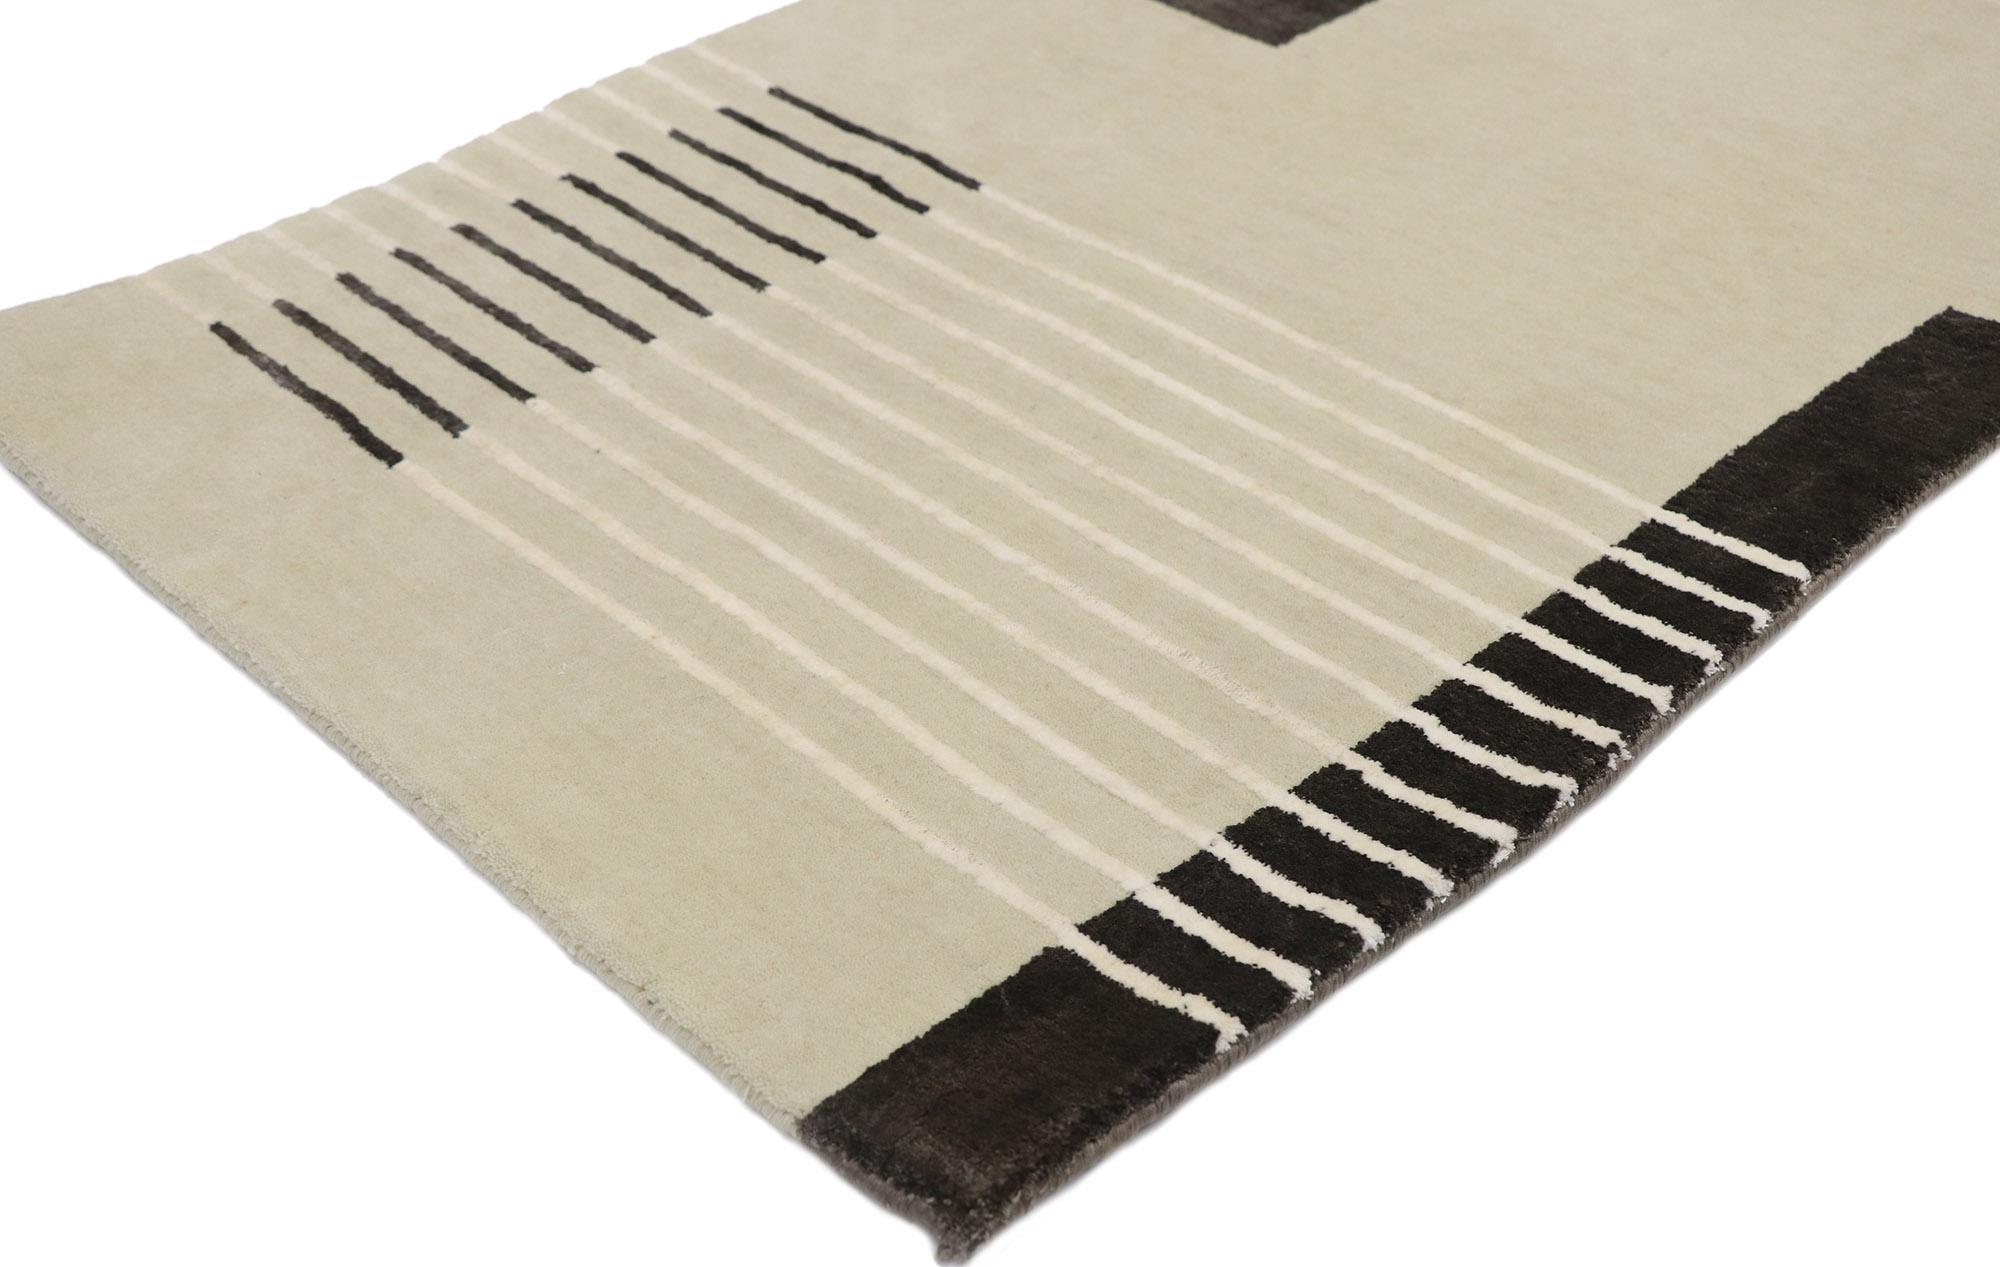 30672 new Contemporary Merino Wool rug, 02'02 x 03'01.
 